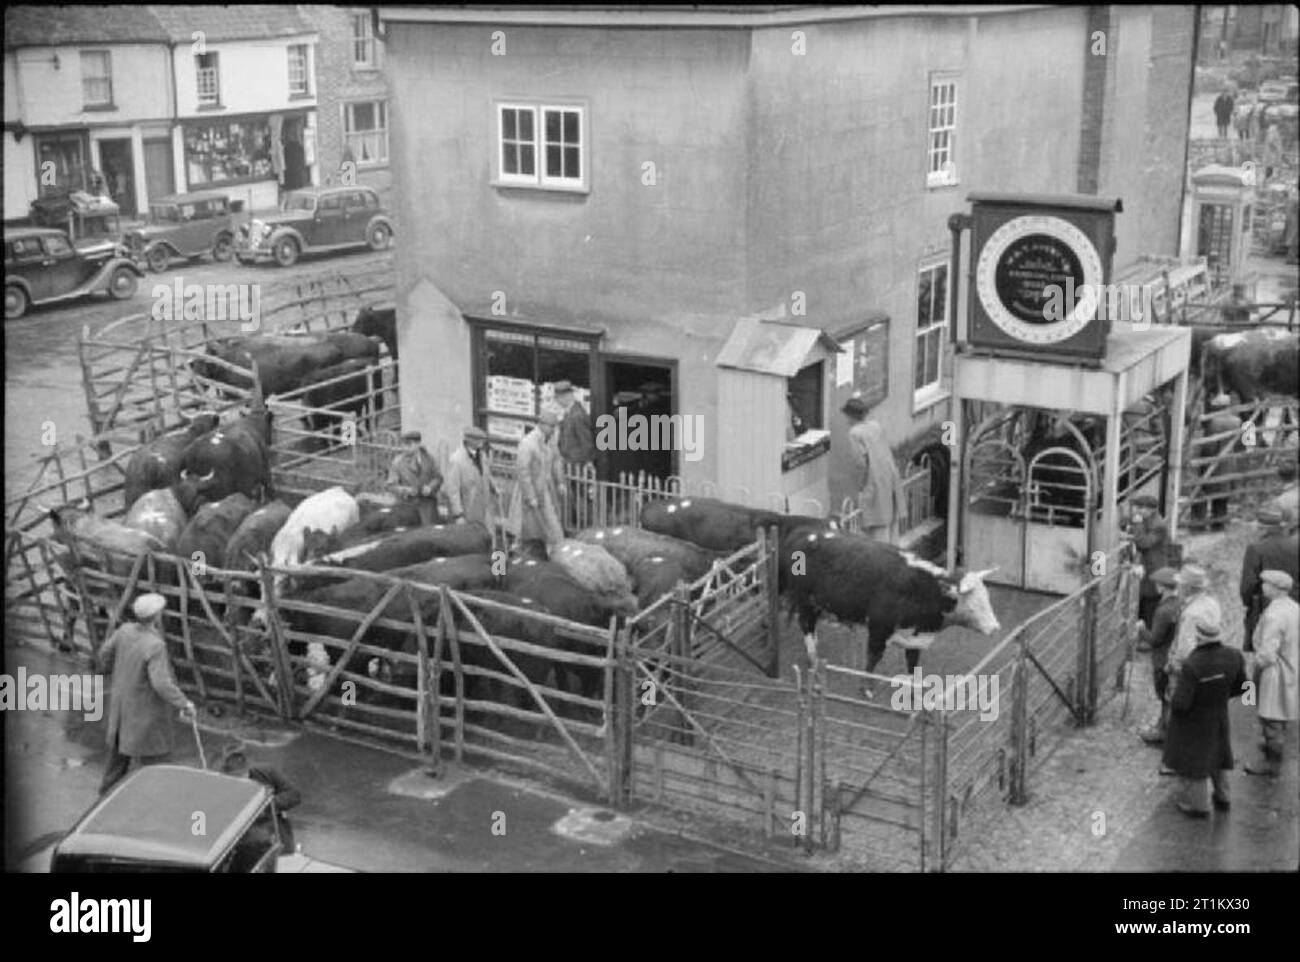 L'automne sur une ferme, l'Agriculture en Grande-Bretagne, 1941 Les bovins sont pesés sur le pont-bascule à Thame marché. Ils sont ensuite inspectées par année qui décident si le bétail est gras ou maigre. Les voitures peuvent être vu garé en arrière-plan. Banque D'Images